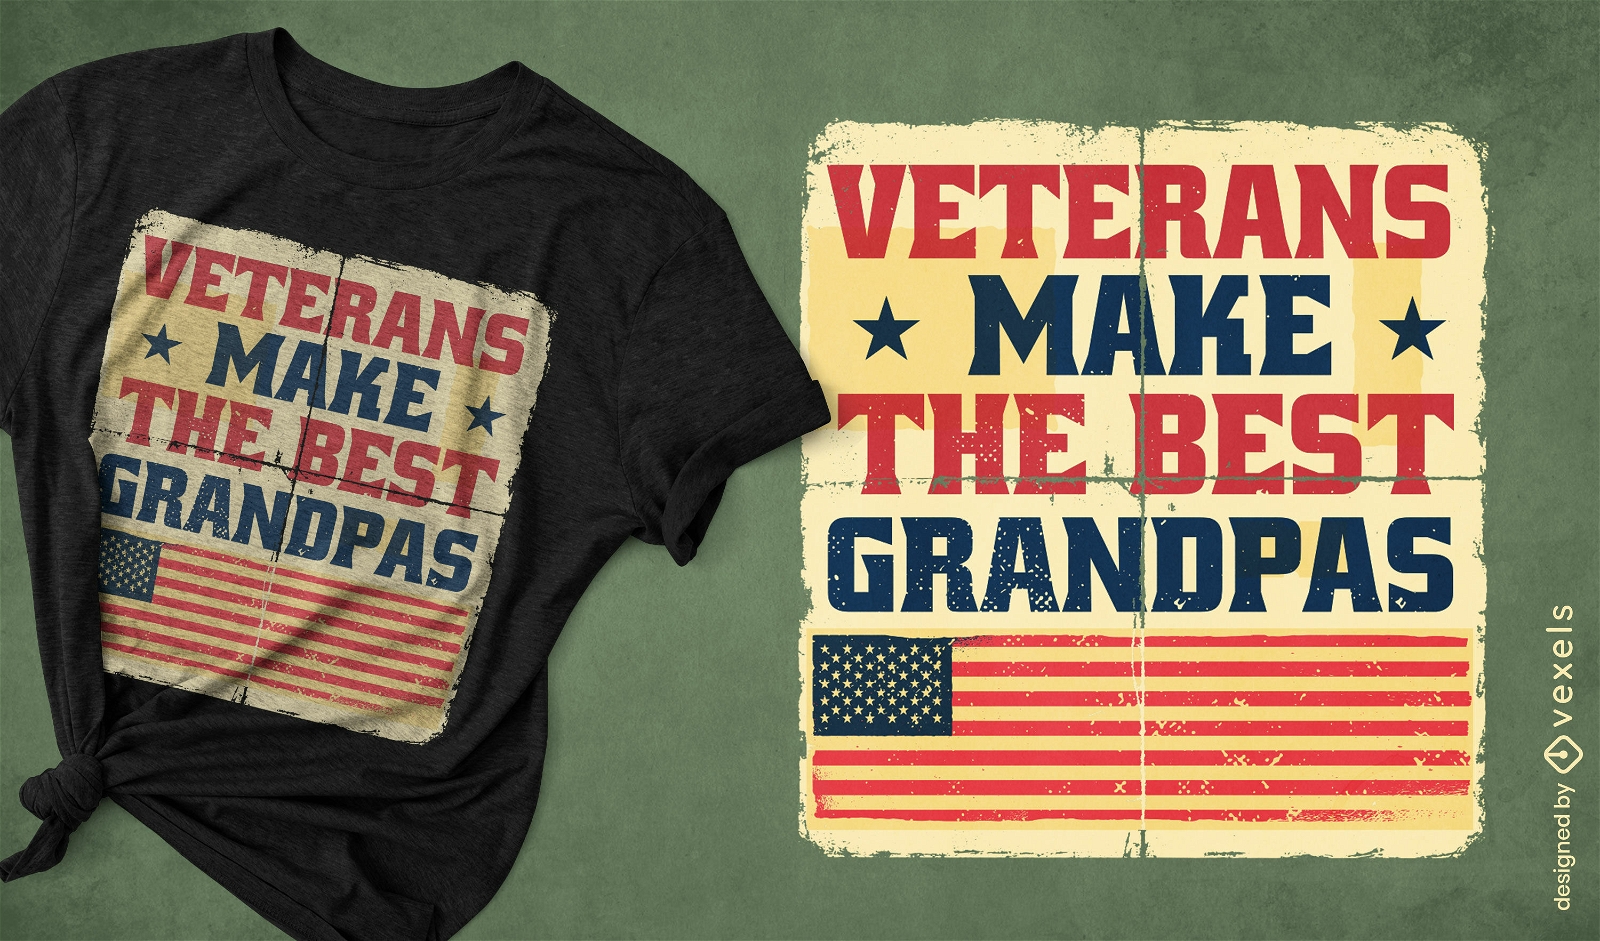 Veterans quote vintage t-shirt design